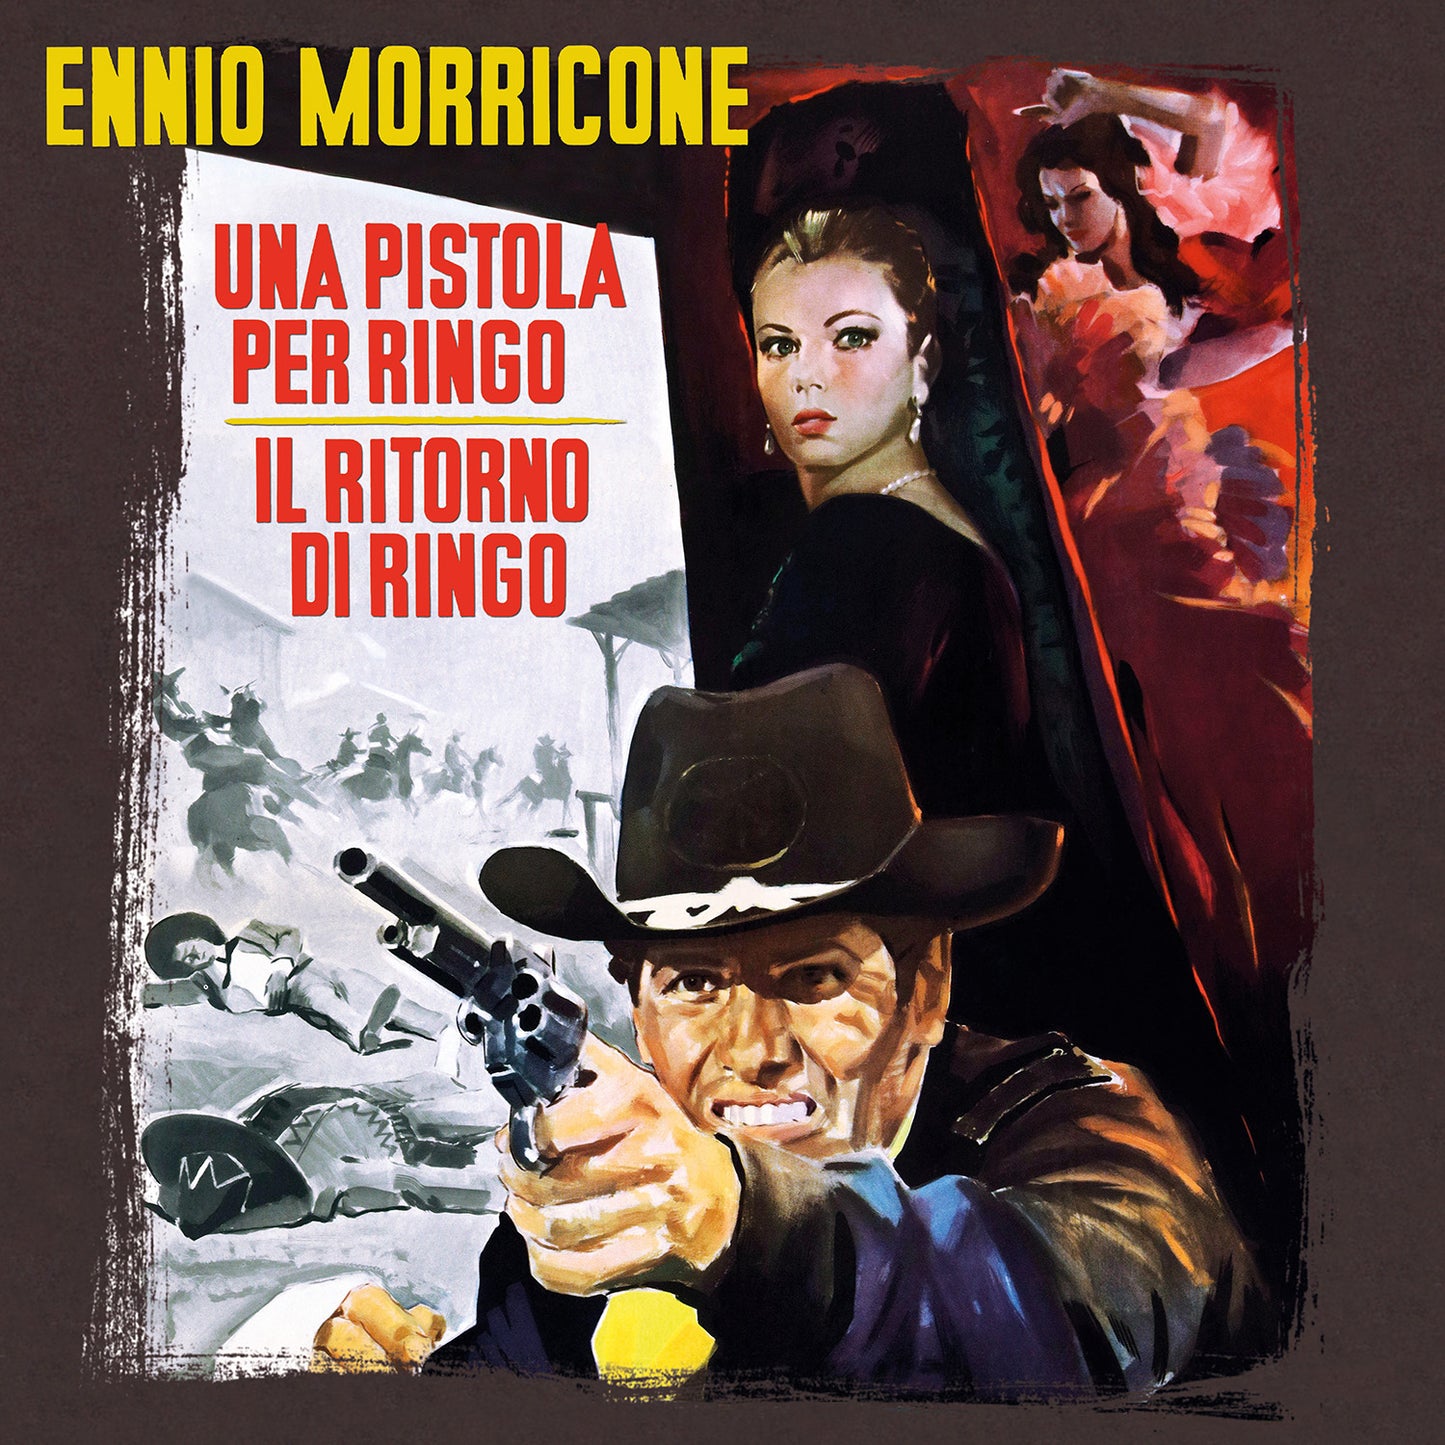 Ennio Morricone - Una Pistola Per Ringo / Il Ritorno Di Ringo (Soundtrack) [LP] (Clear Red Vinyl, limited)